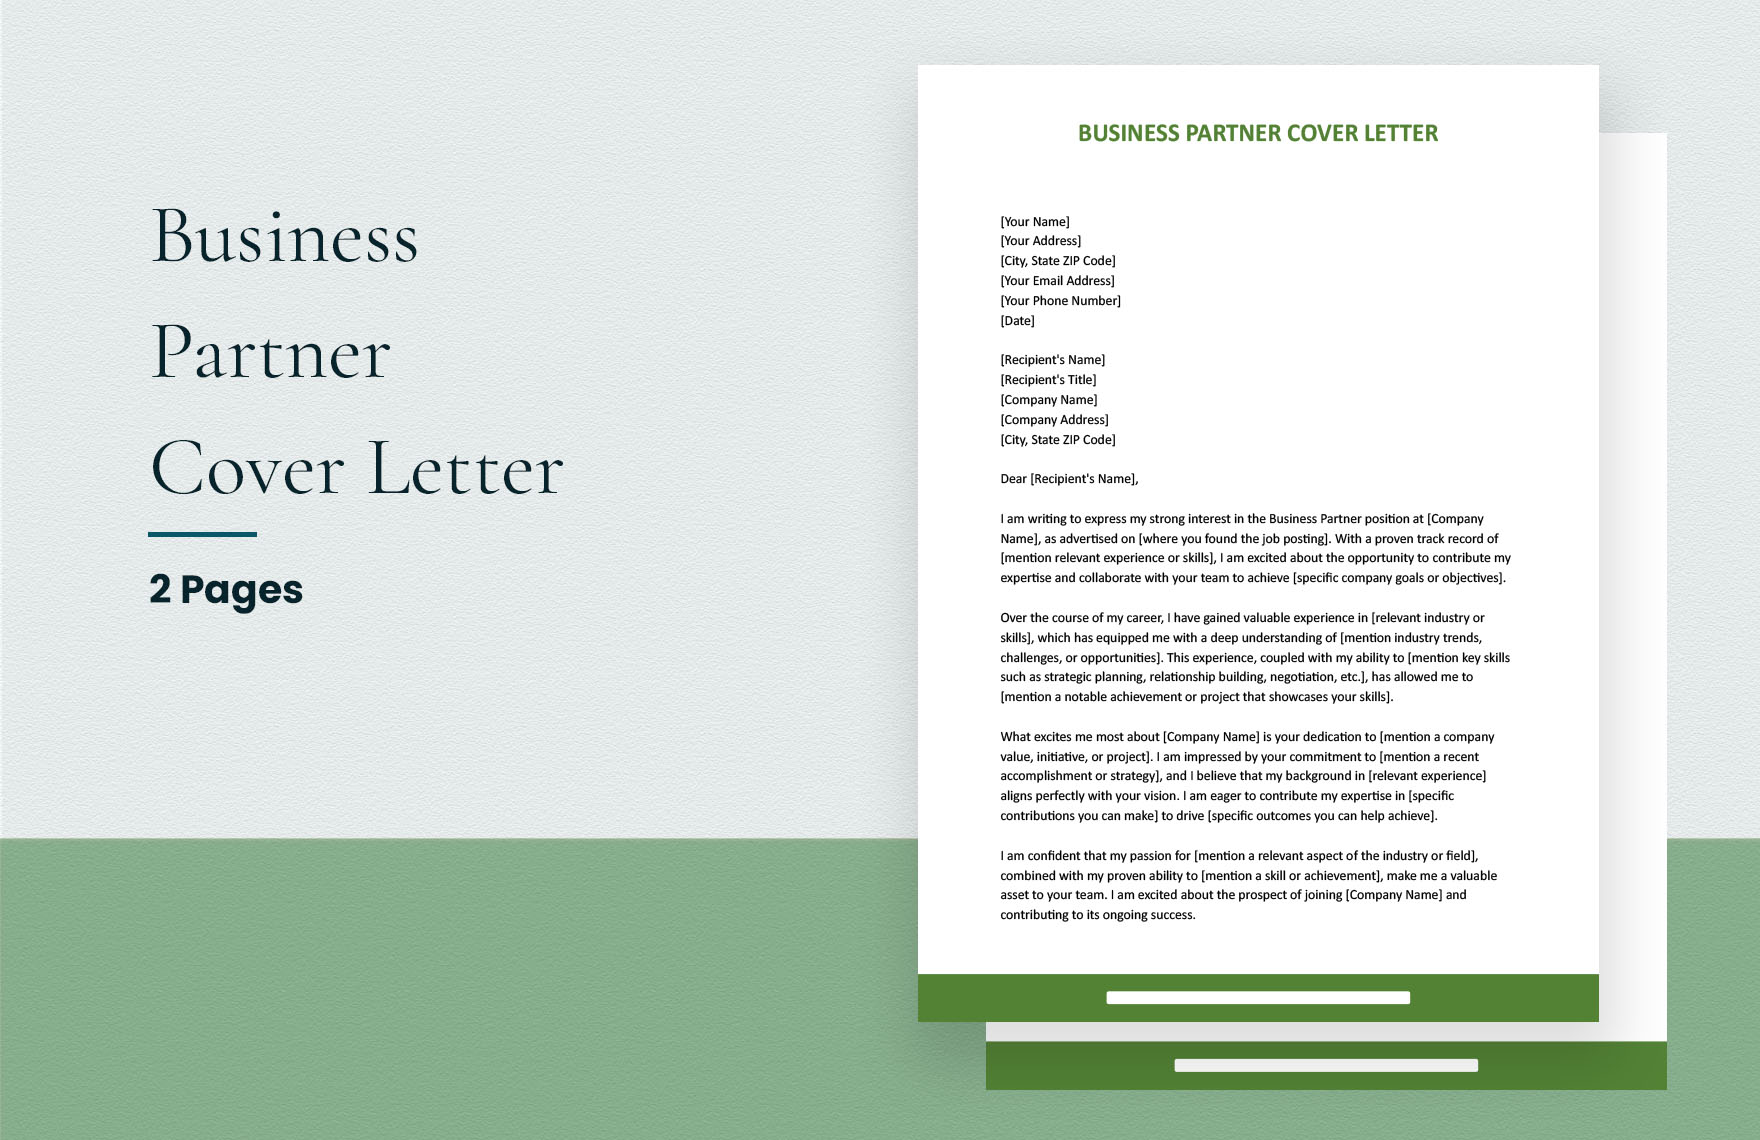 Business Partner Cover Letter